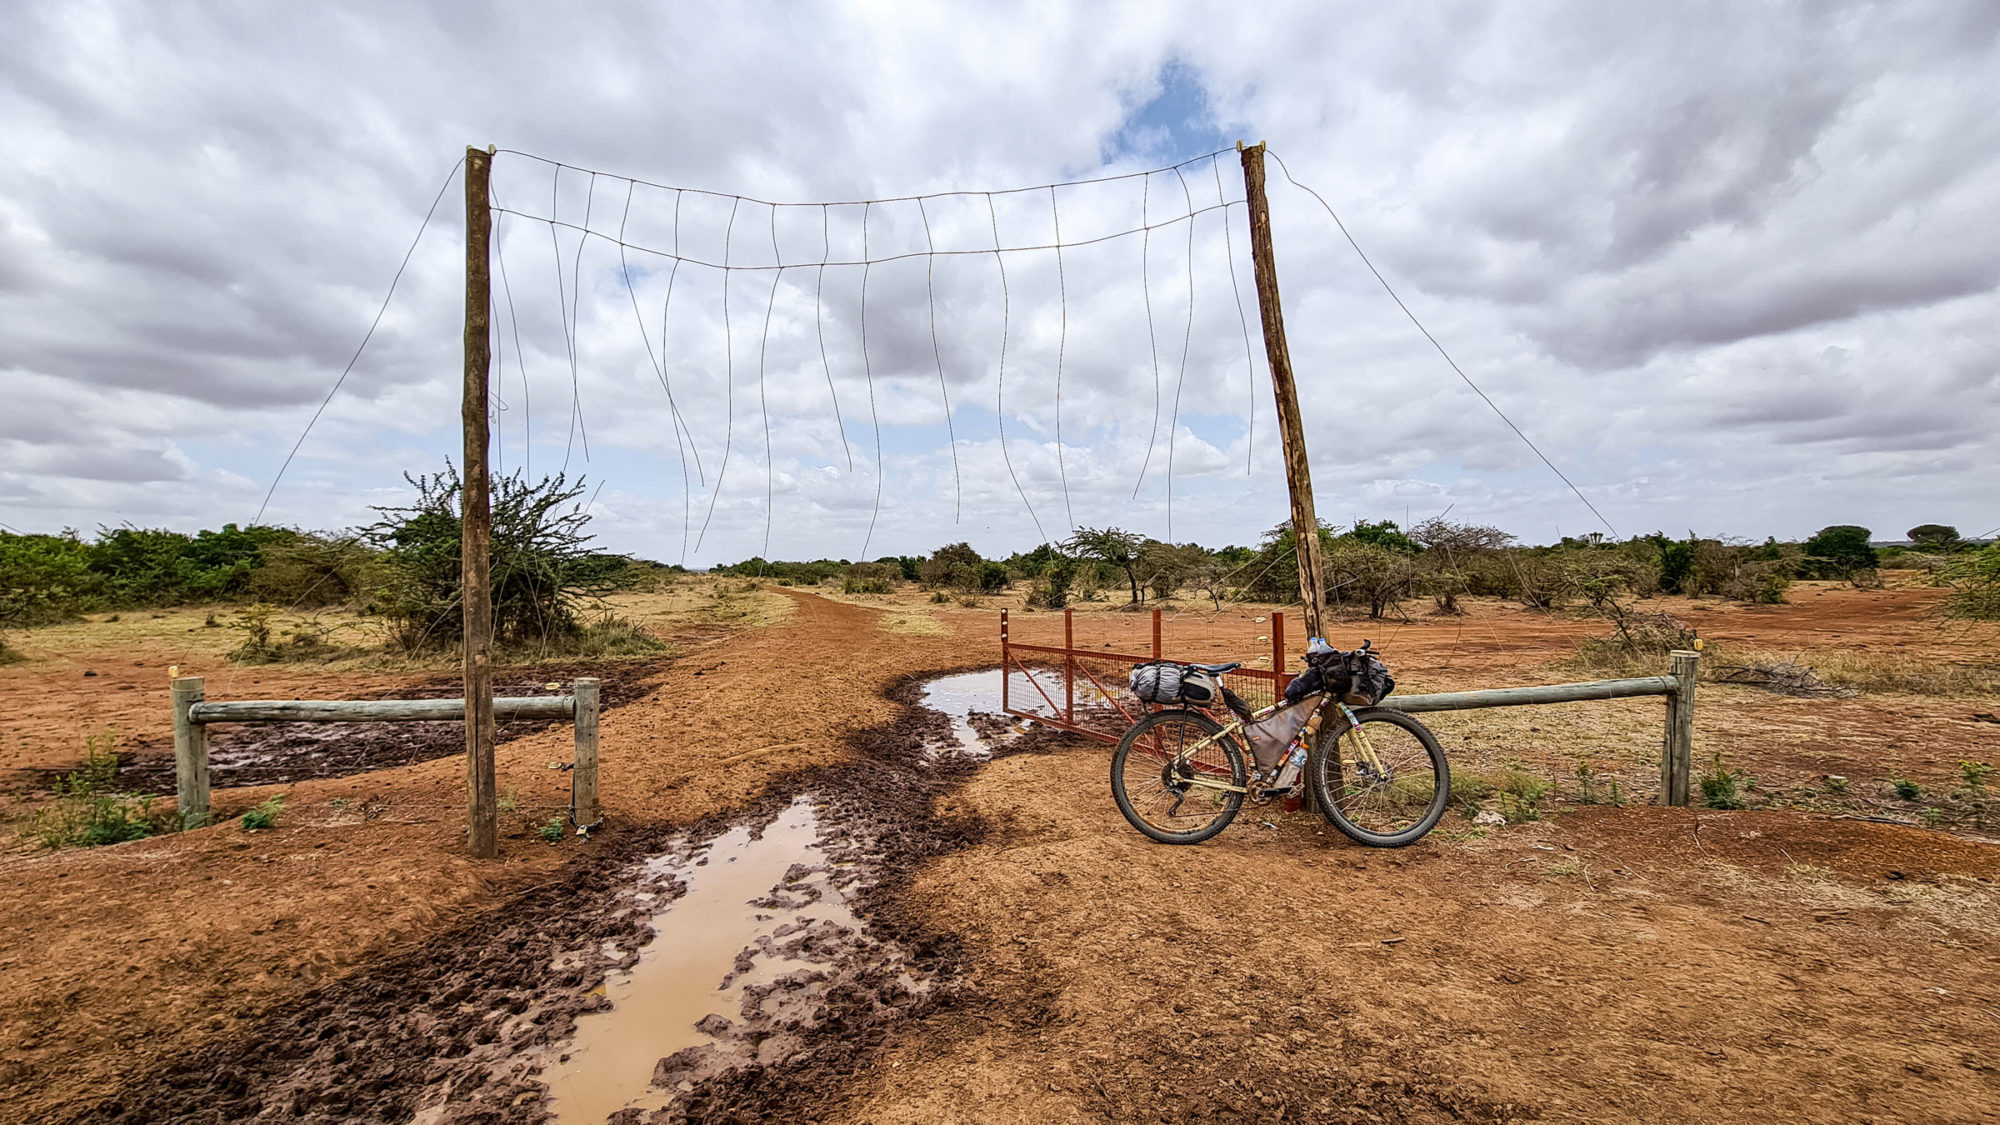 Making of the Kenya Bike Odyssey video